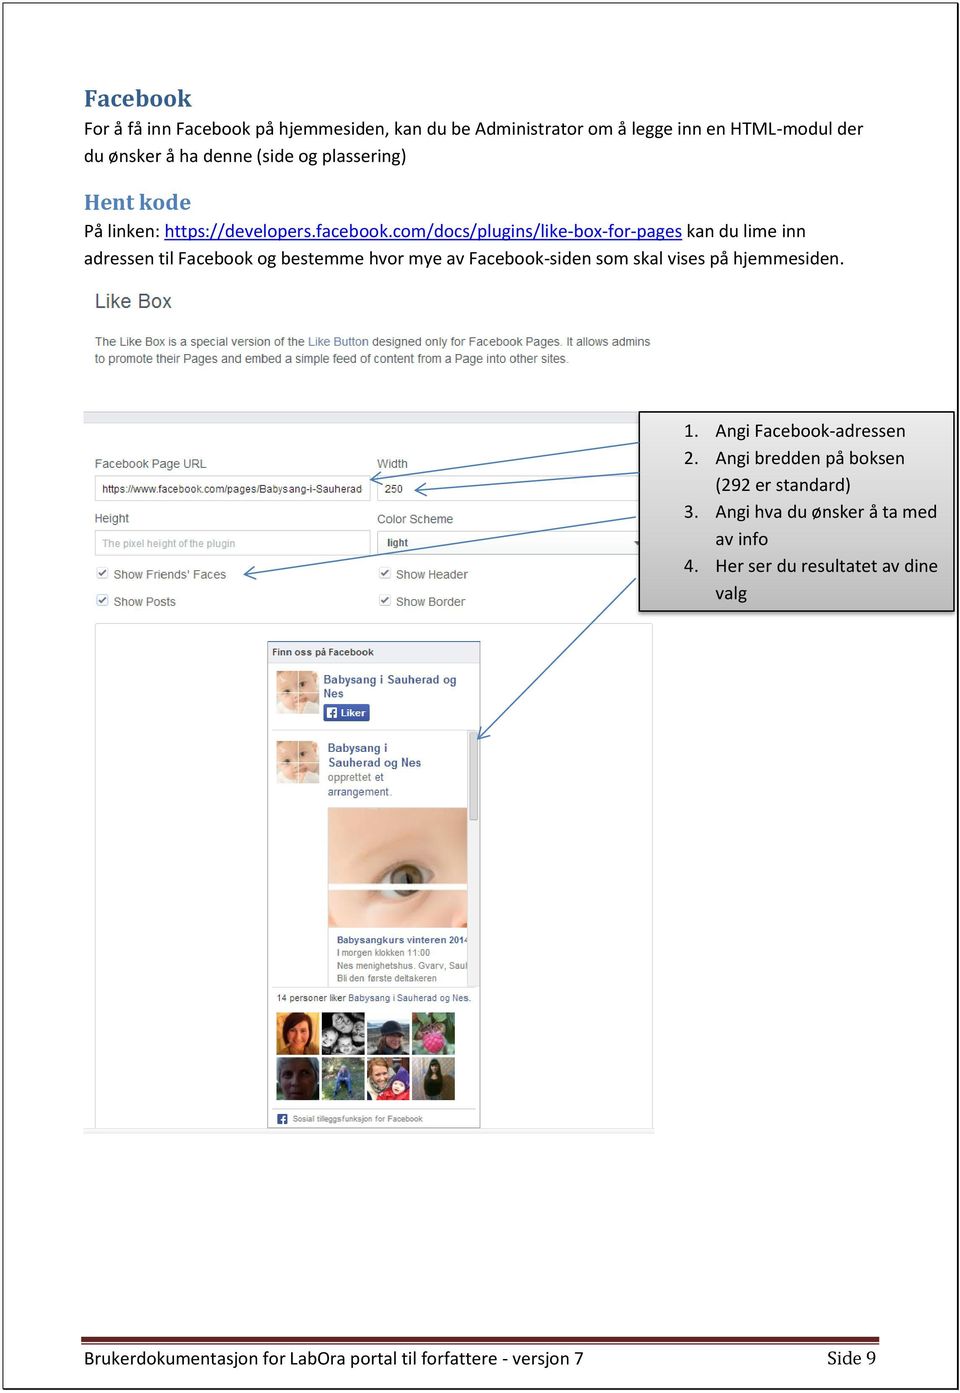 com/docs/plugins/like-box-for-pages kan du lime inn adressen til Facebook og bestemme hvor mye av Facebook-siden som skal vises på